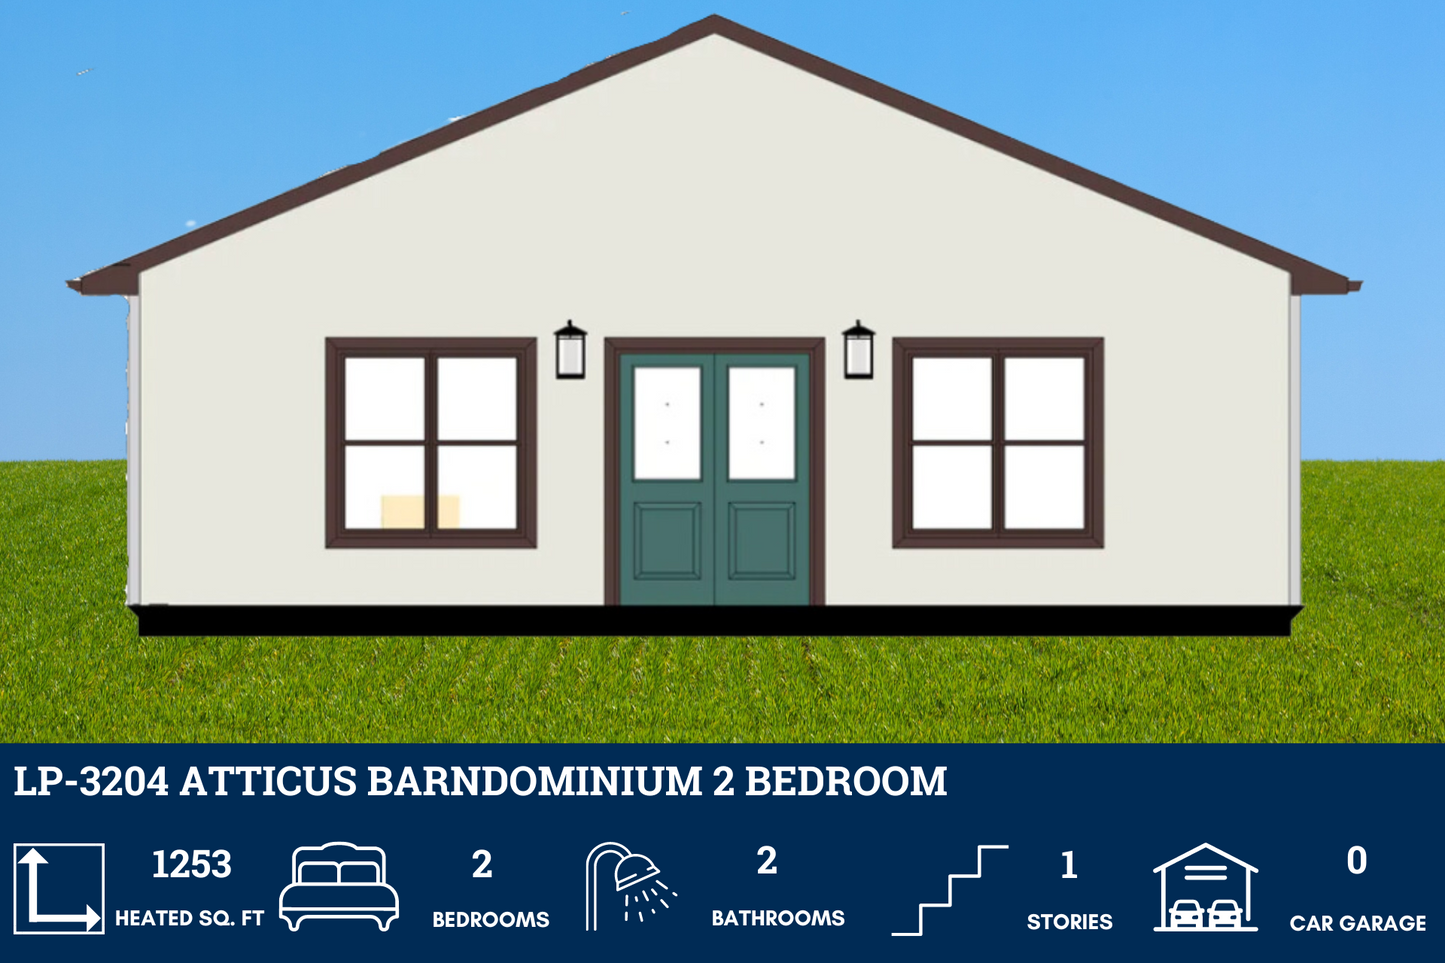 PL-3204 Atticus Barndominium House Plan